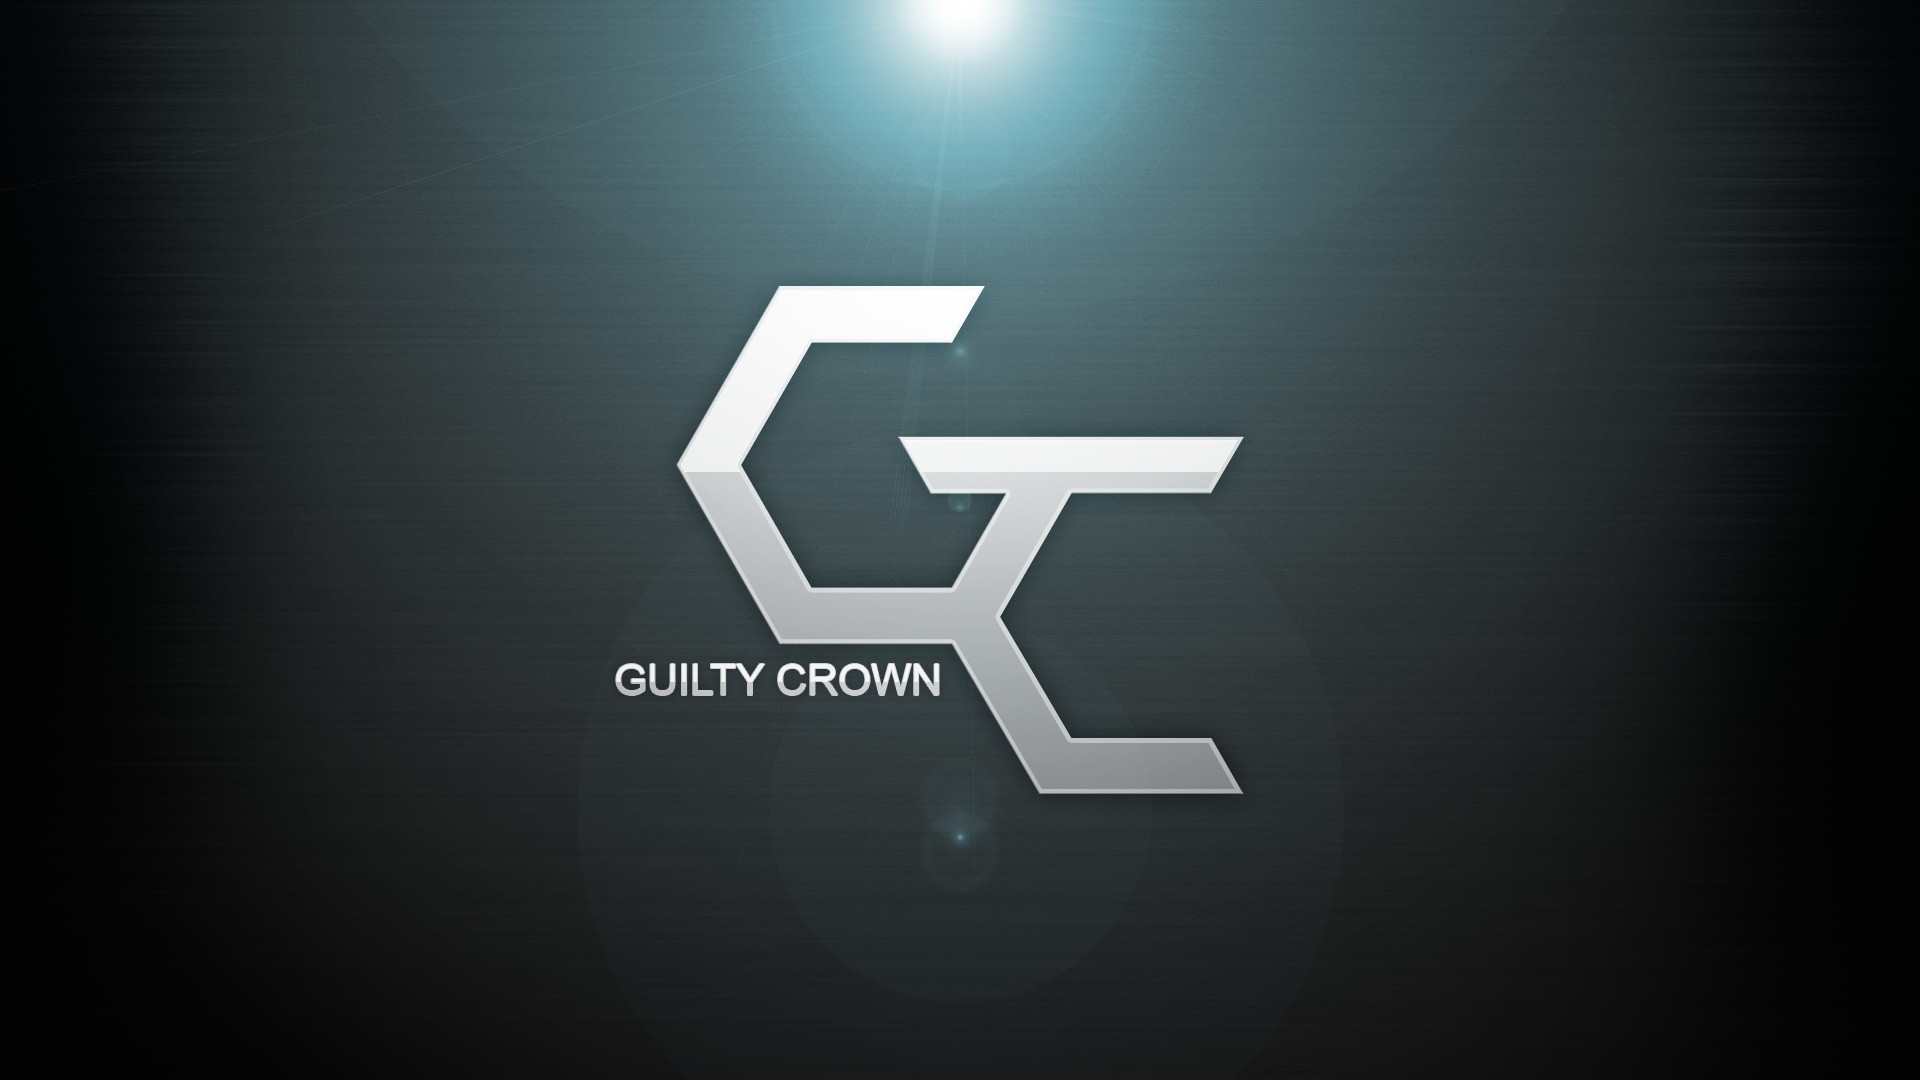 Guilty Crown Wallpaper HD by Gazownik on DeviantArt